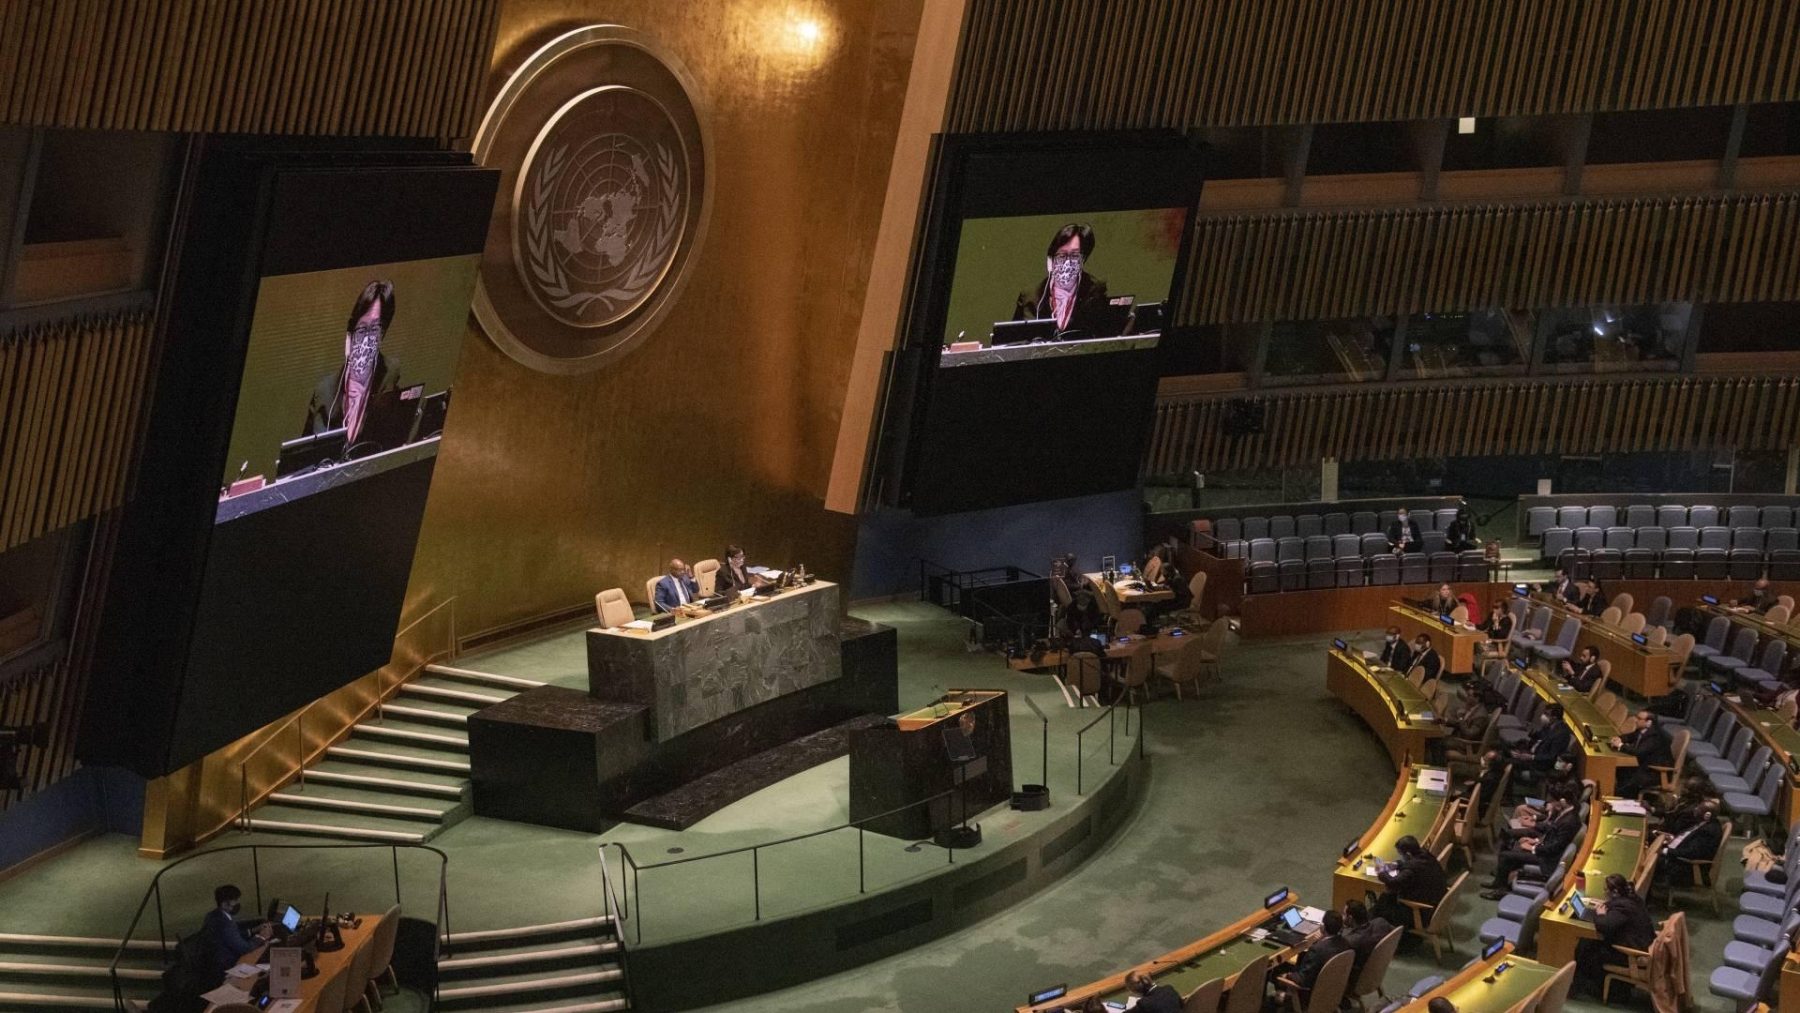 Mijlpaal: VN-vergadering neemt resolutie tegen gebruik vetorecht aan